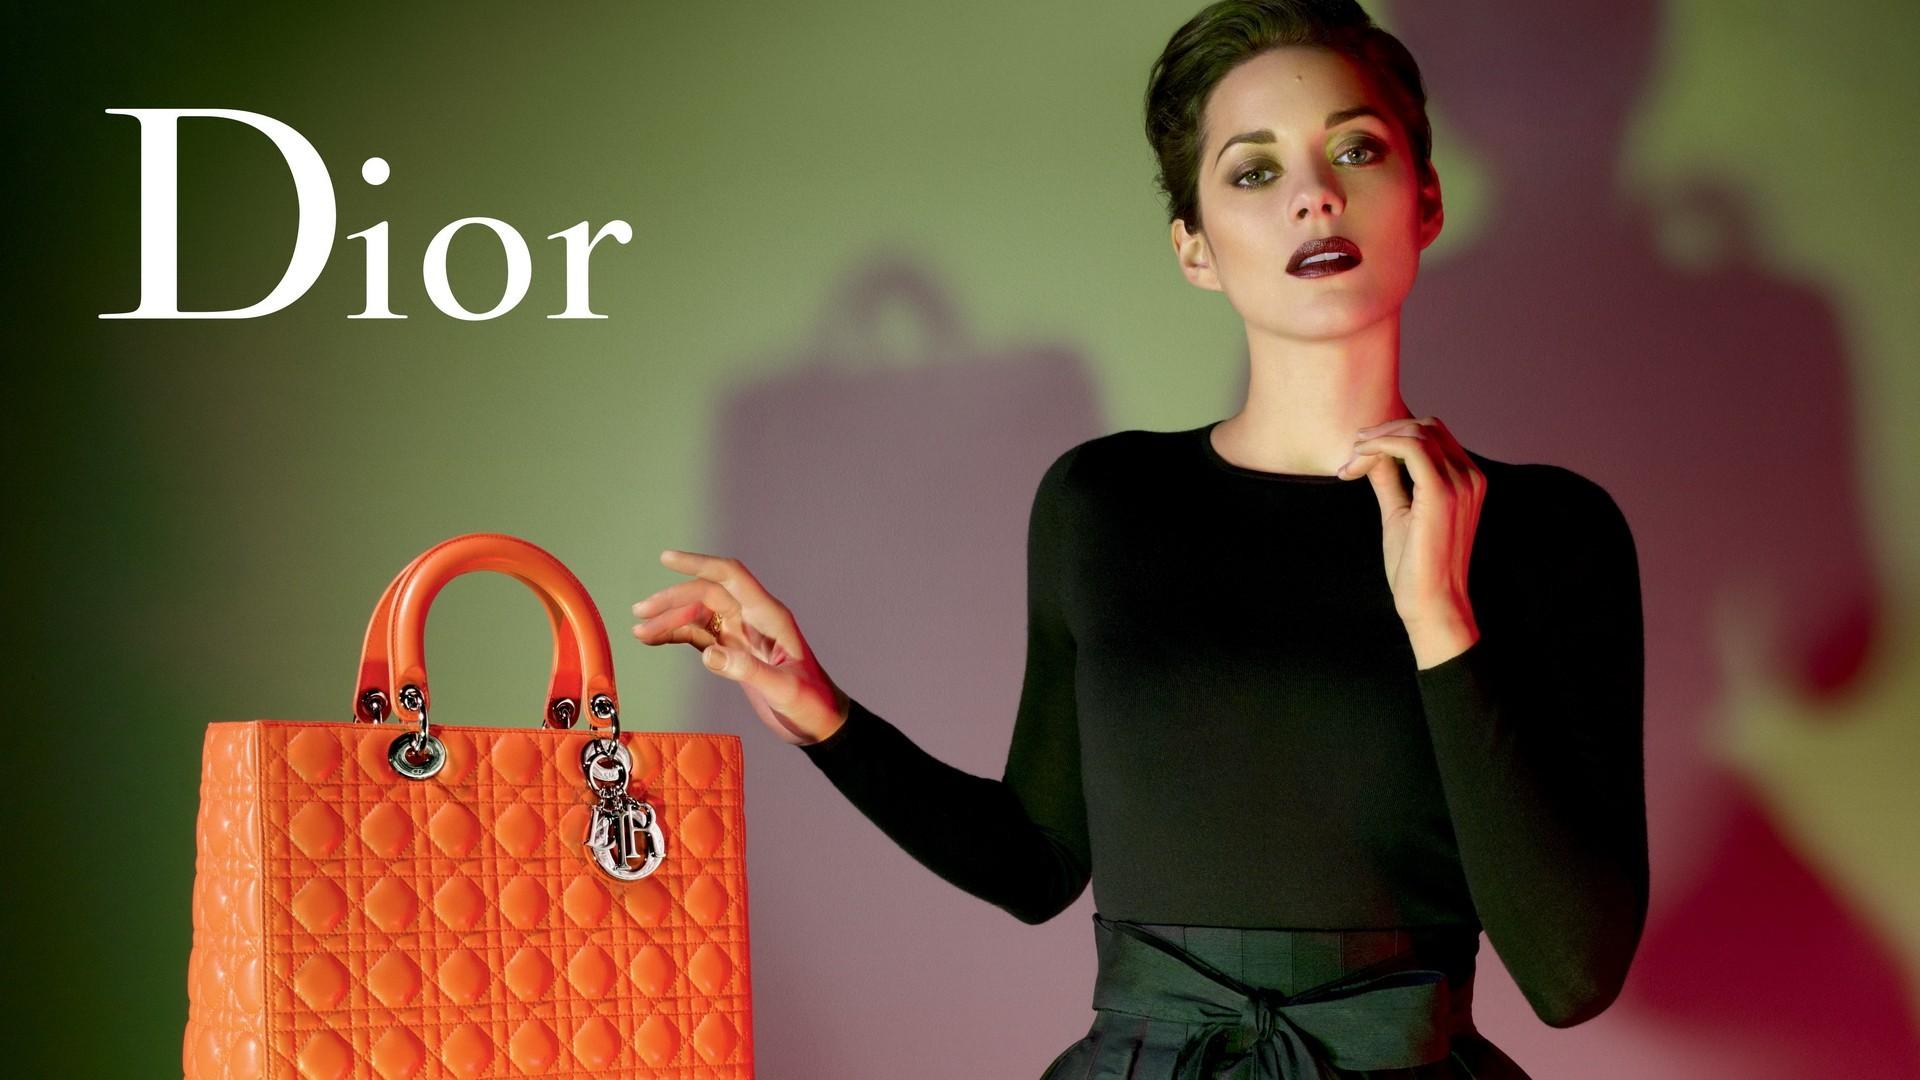 Dior Homme, Model, Messenger Bag, Bag, Brand HD Wallpaper, Brands